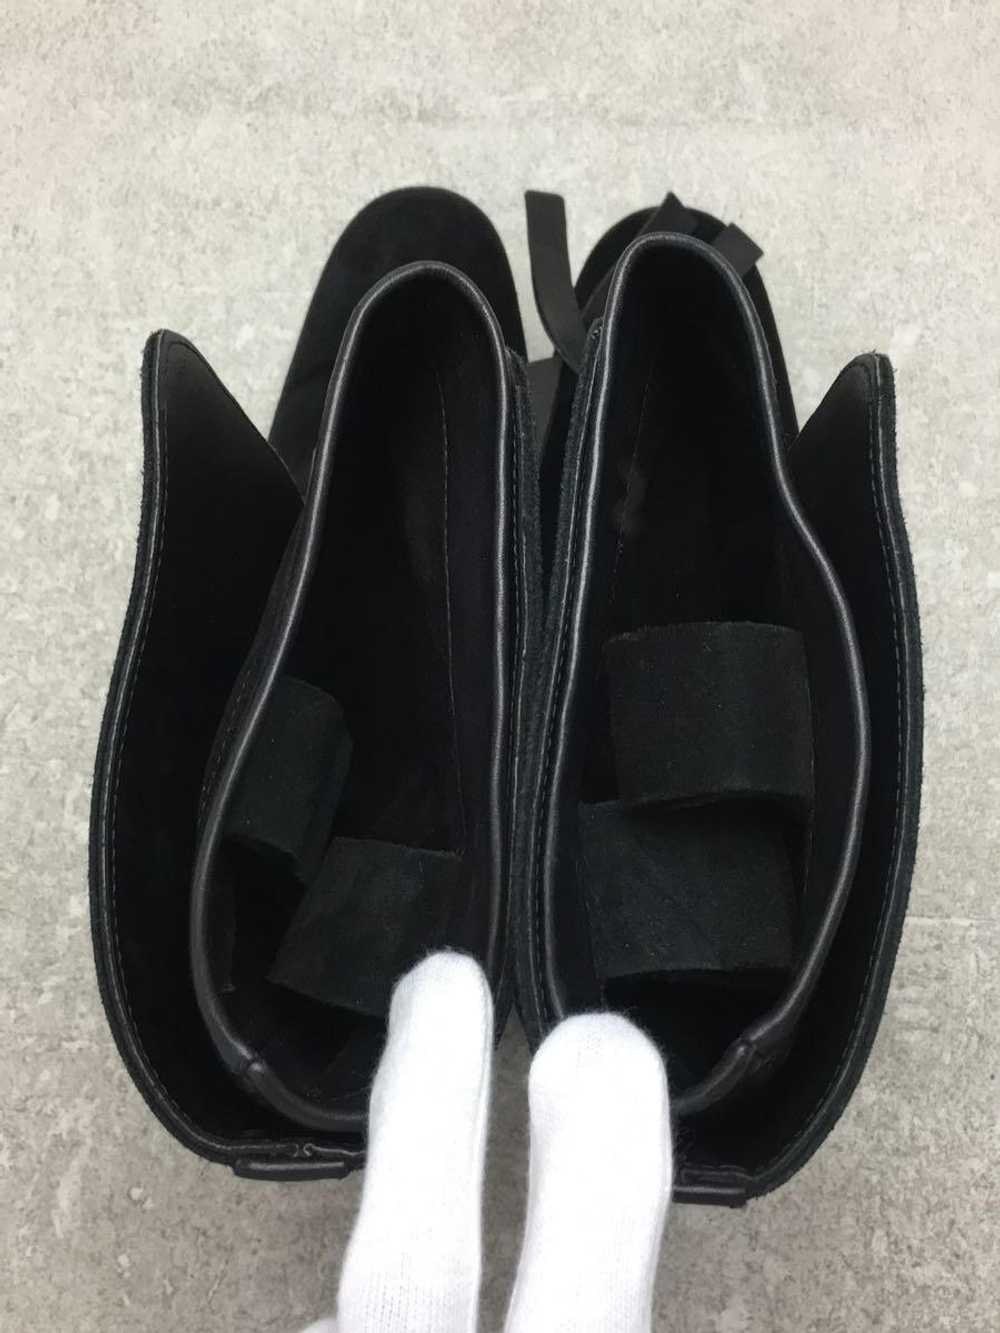 Yves Saint Laurent Boots/40/Blk/Suede Shoes BUR51 - image 4